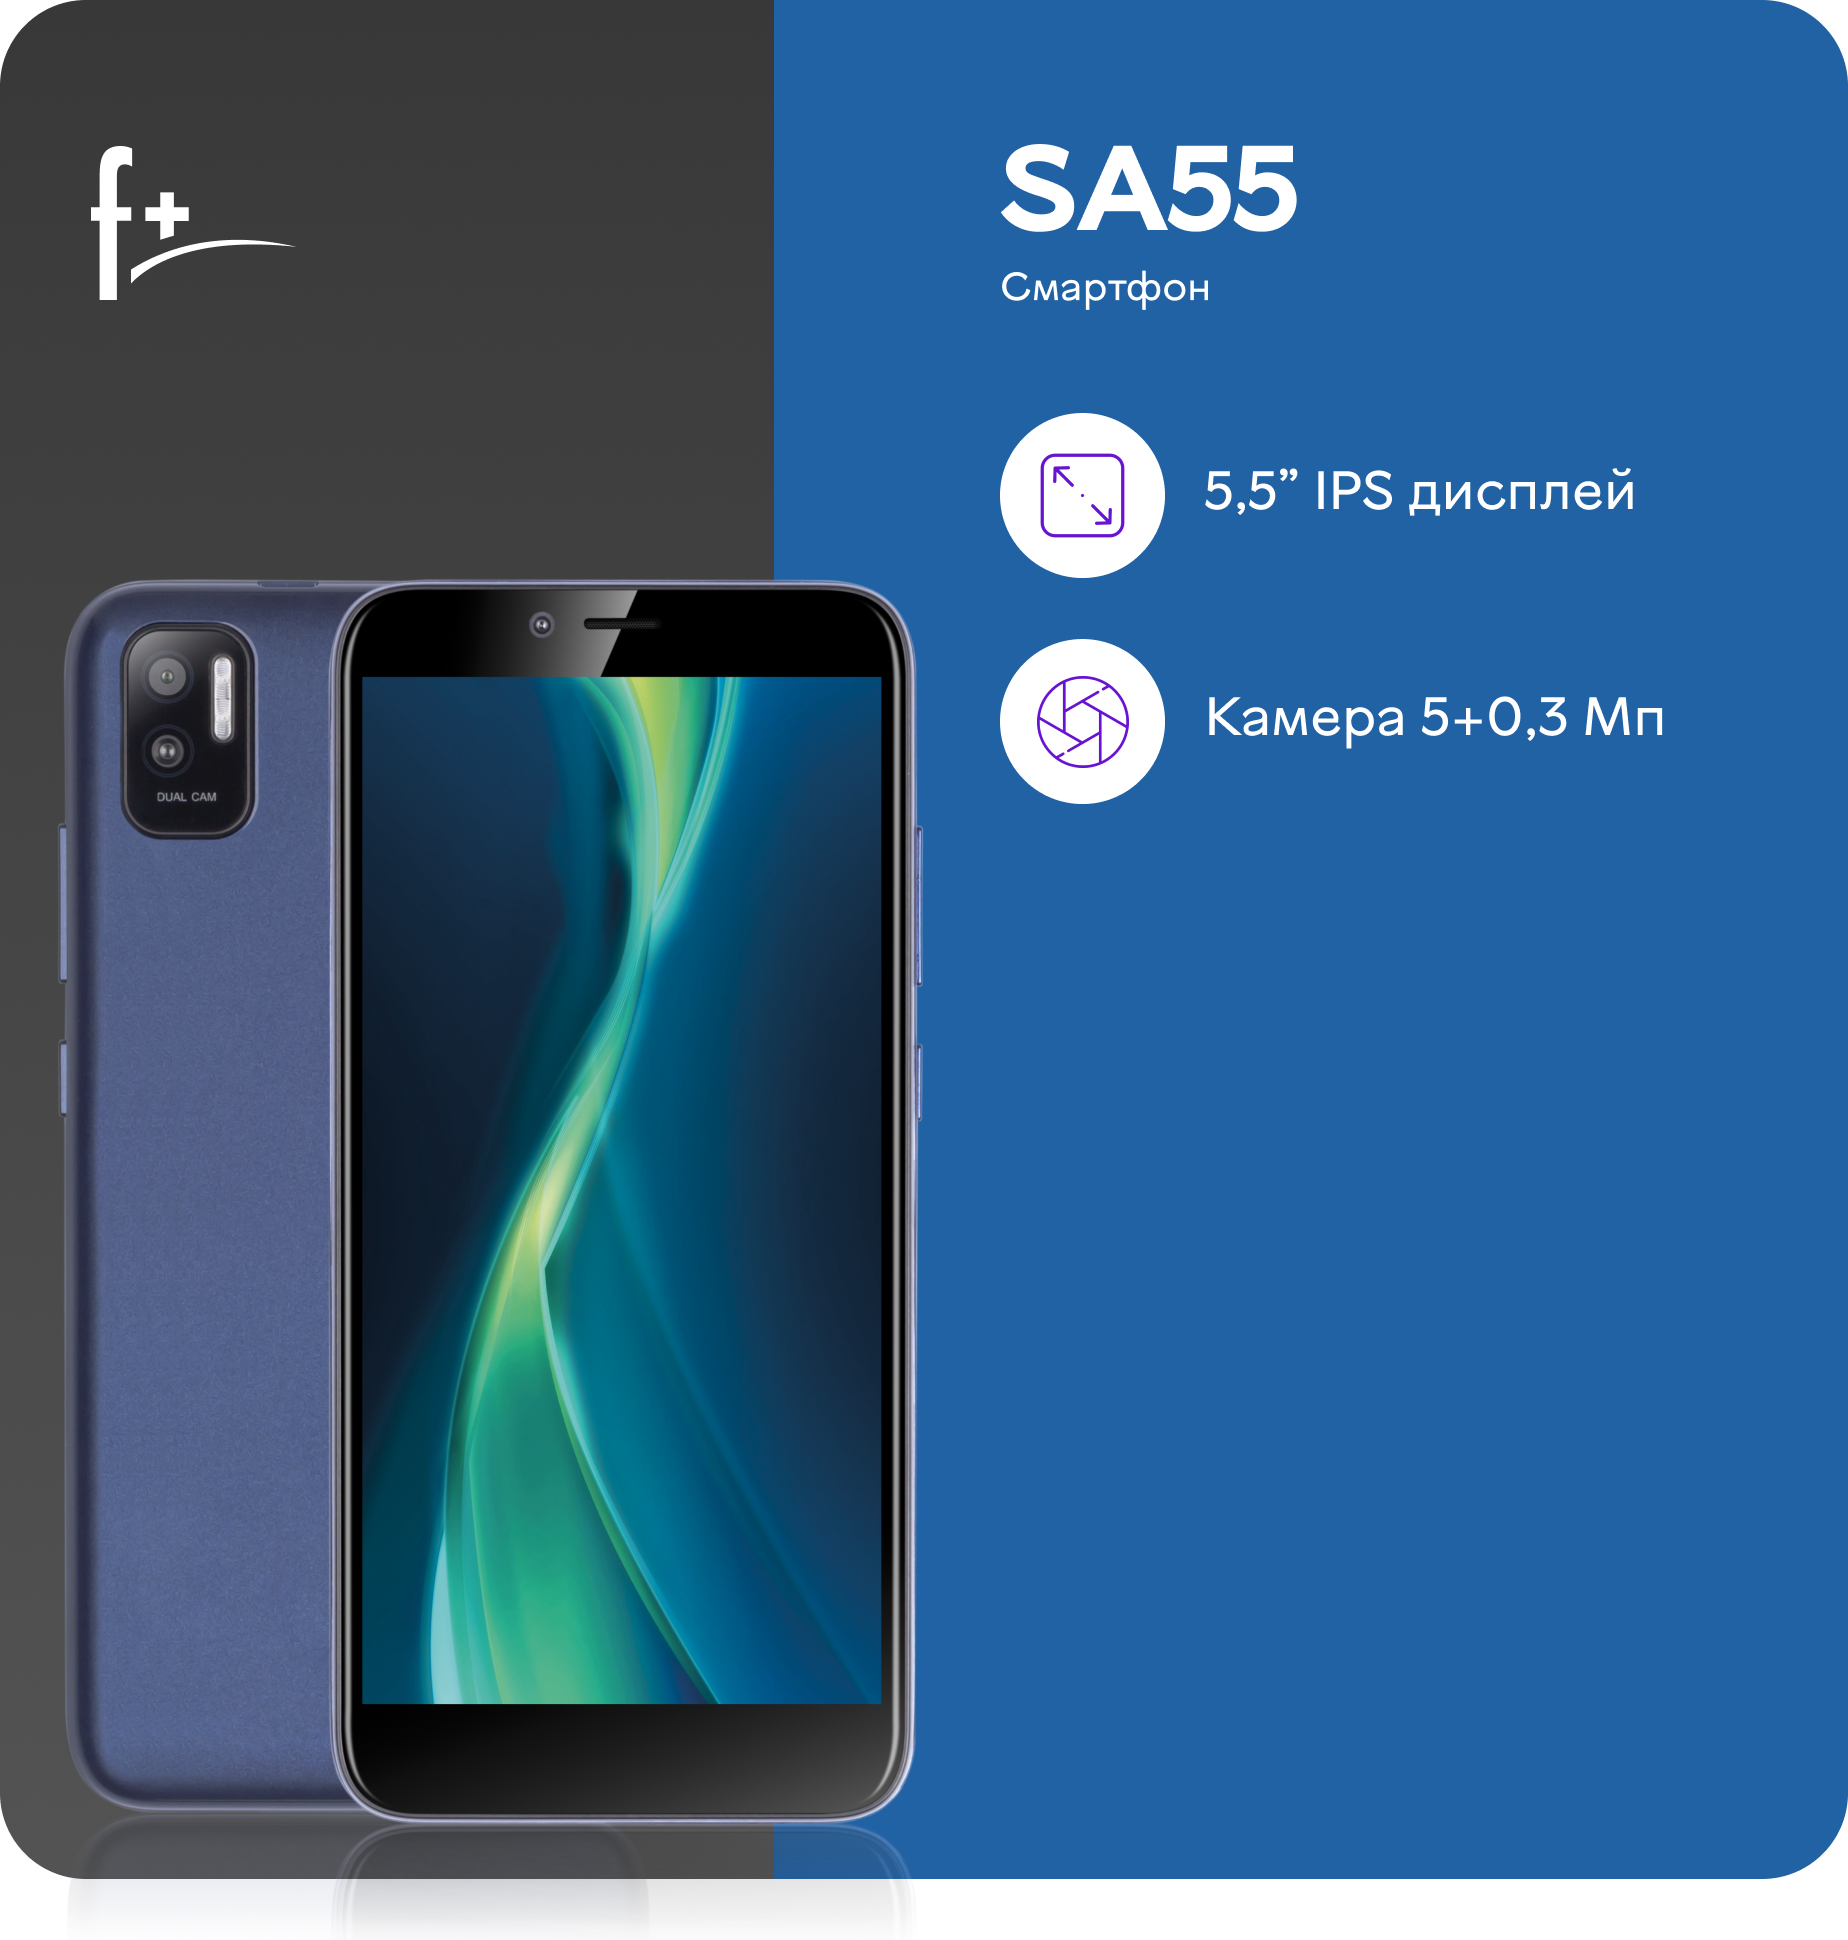 Смартфон F+ SA55 2/16GB Blue